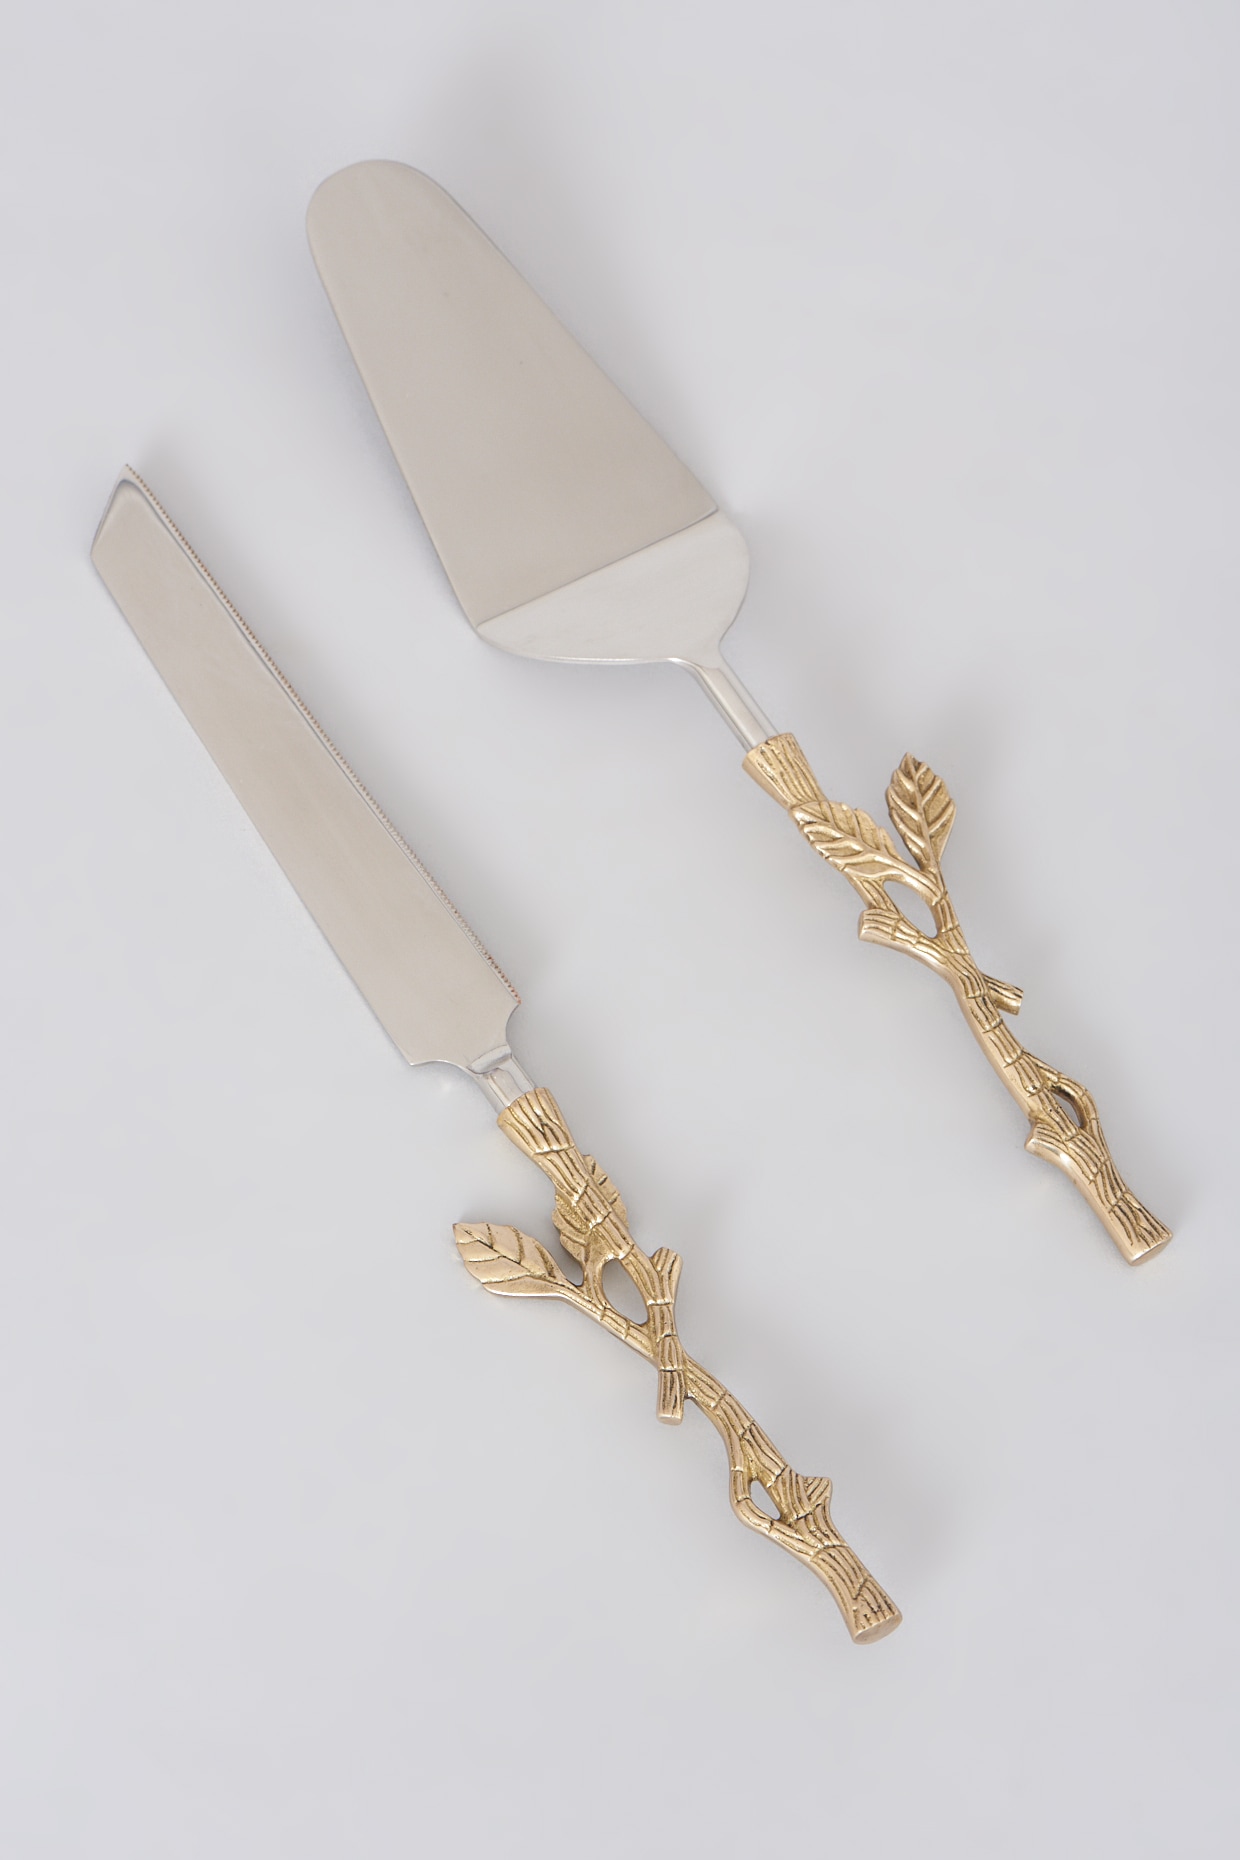 Rose Gold Cake Knife Set – bringithome.in